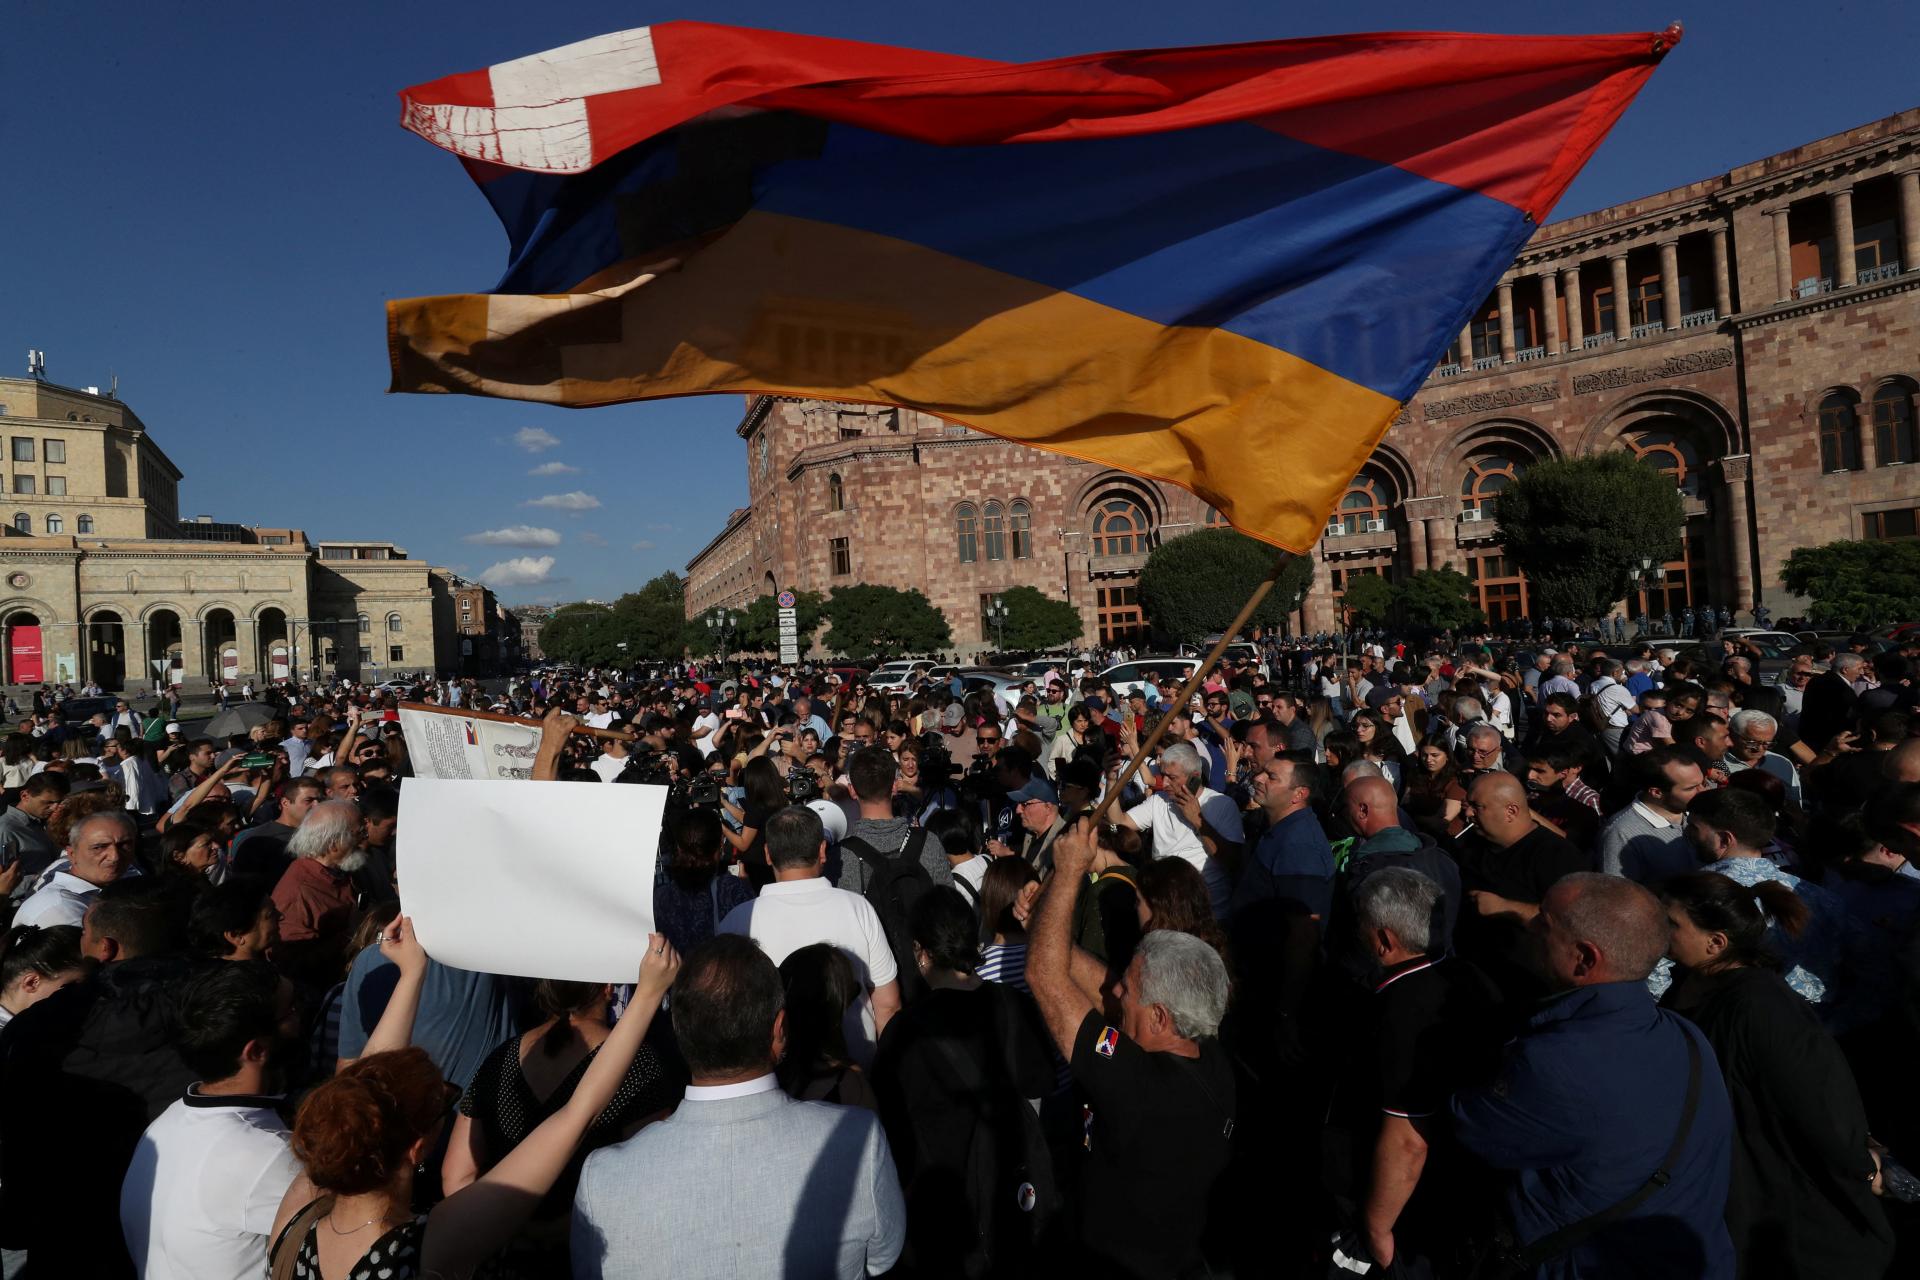 ANALÝZA: Nové ruské zlyhanie sa volá Karabach. Neúprosný konflikt je po 30 rokoch na prahu veľkého zlomu